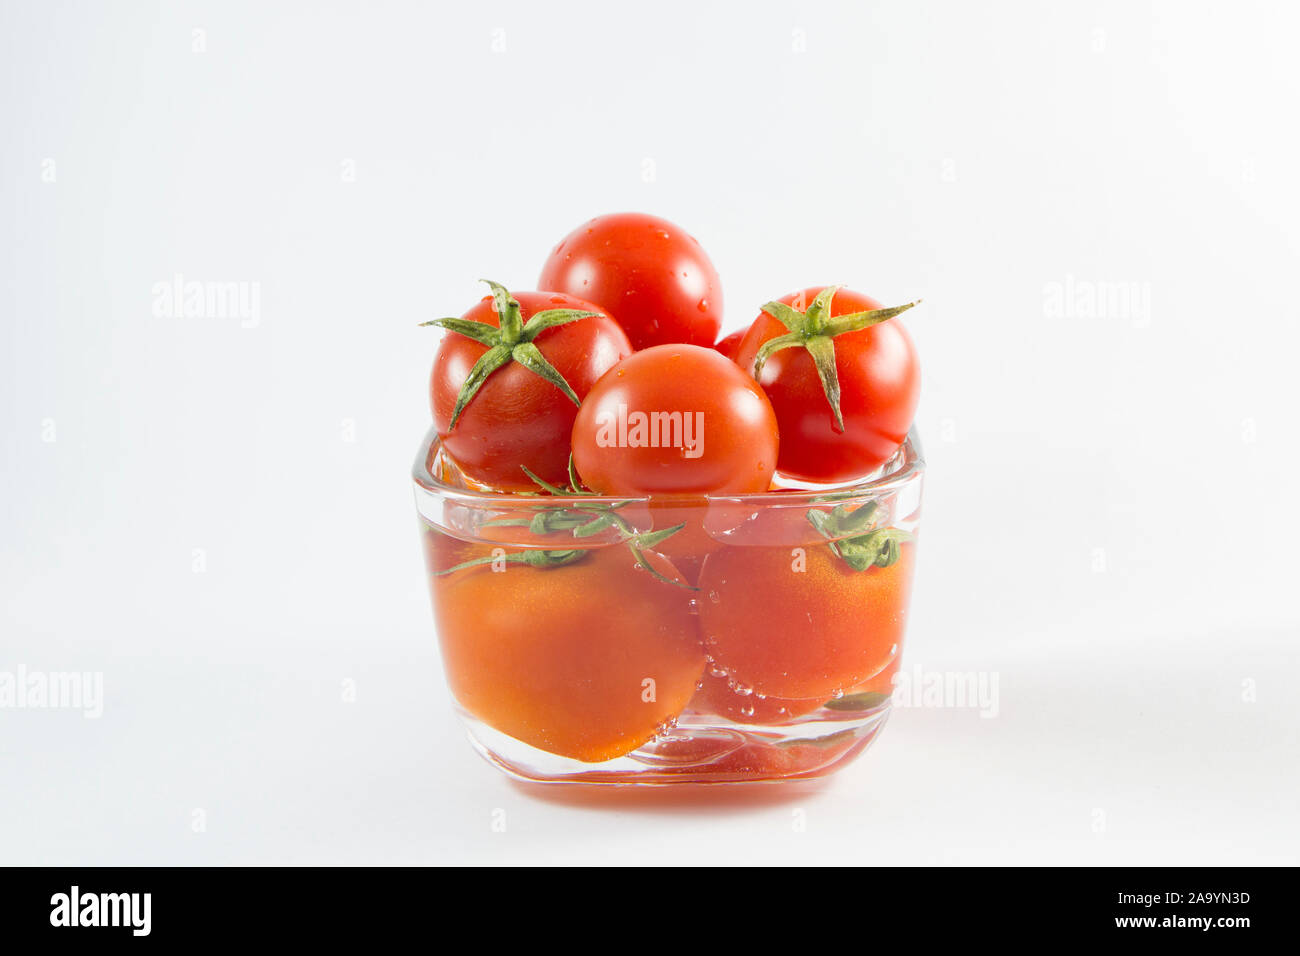 Fresh Tomatoes isolated on white background Stock Photo